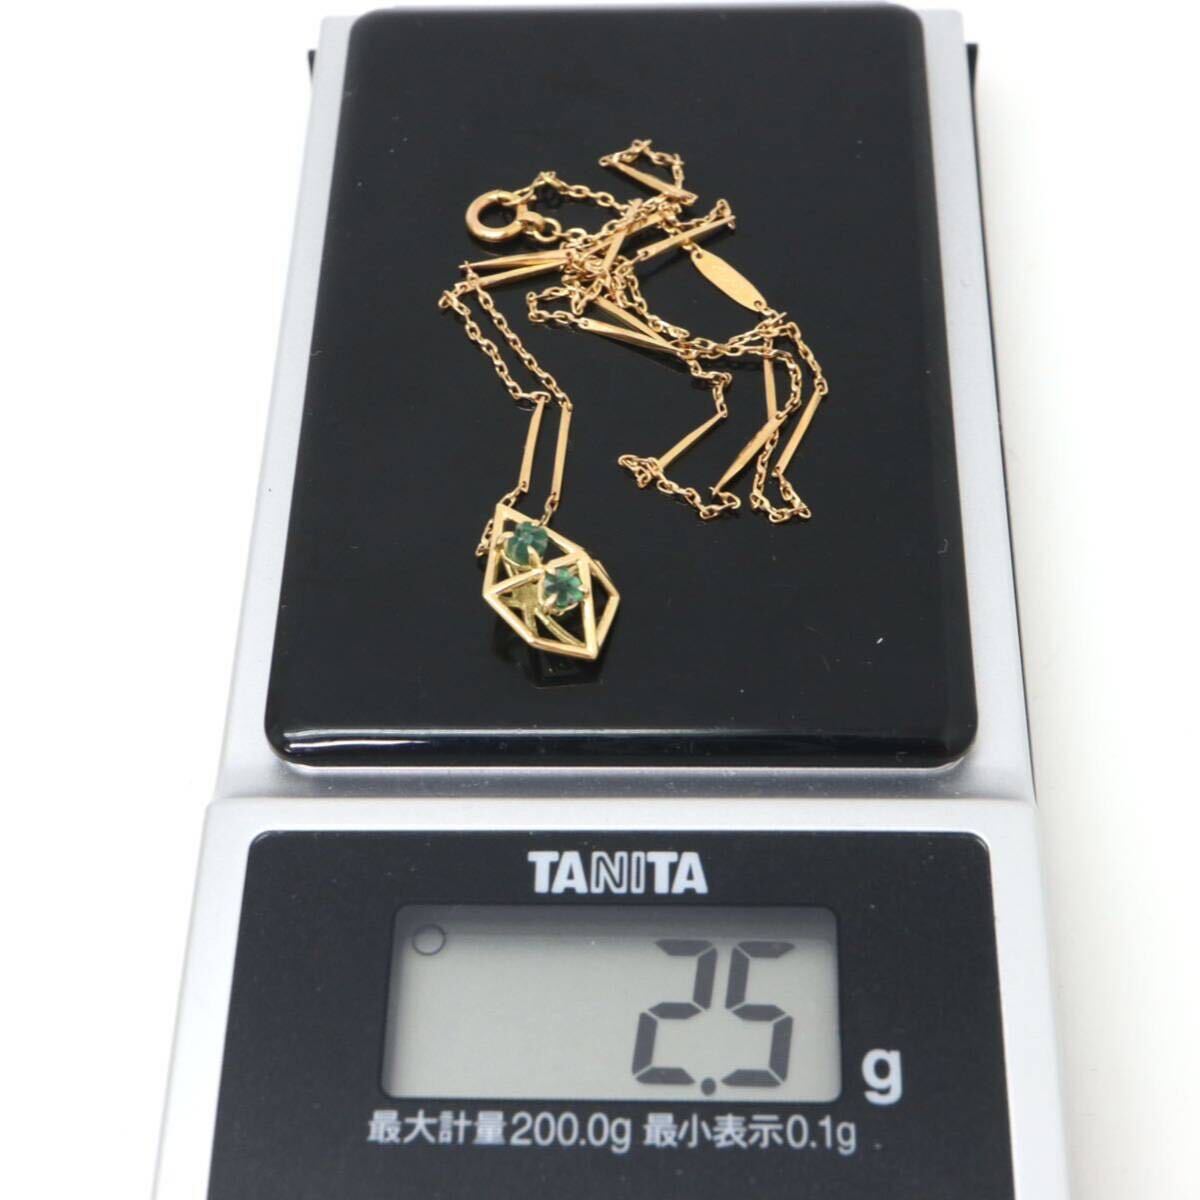 ソーティング付き!!◆K18 天然トラピッチェエメラルドネックレス◆A 約2.5g 約40.0cm emerald necklace EB0/EB0